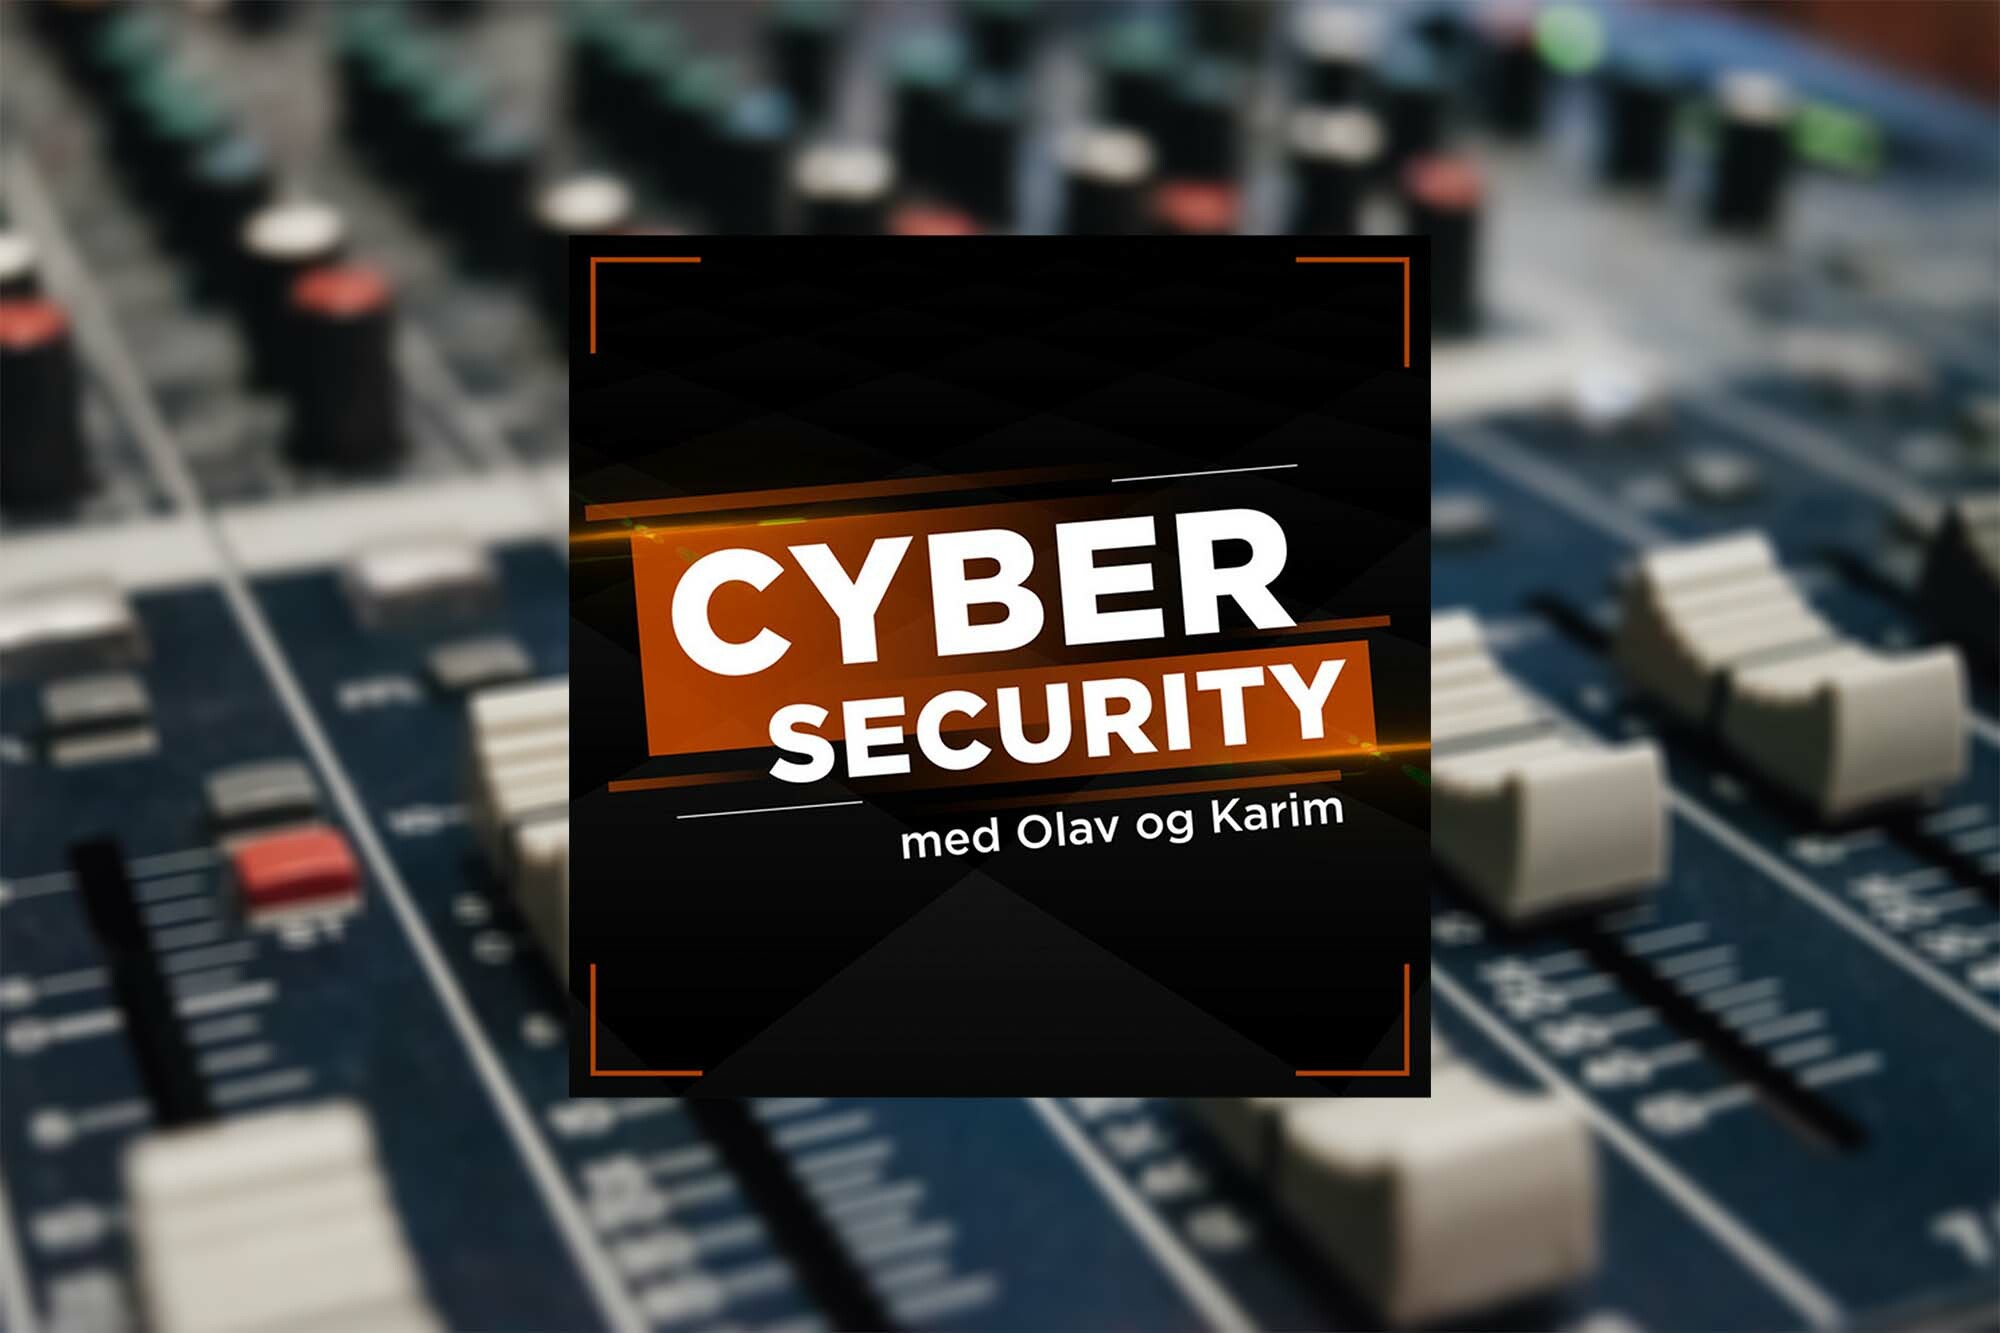 cyber security med olav og karim logo